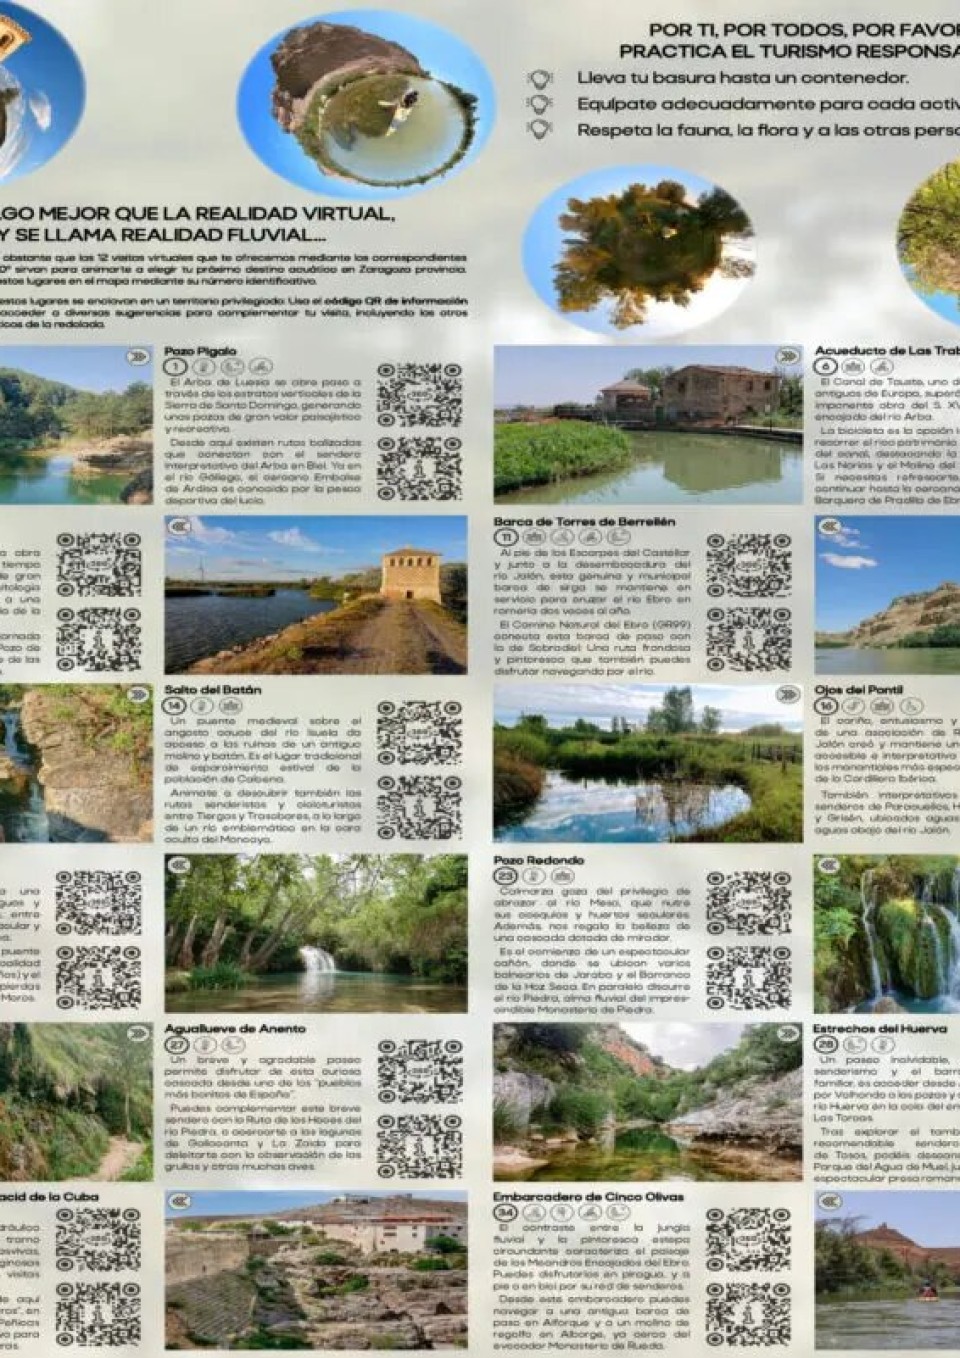 Imagen folleto-fluvial-dpz-v10-pagina-2-768x801.jpg.jpg